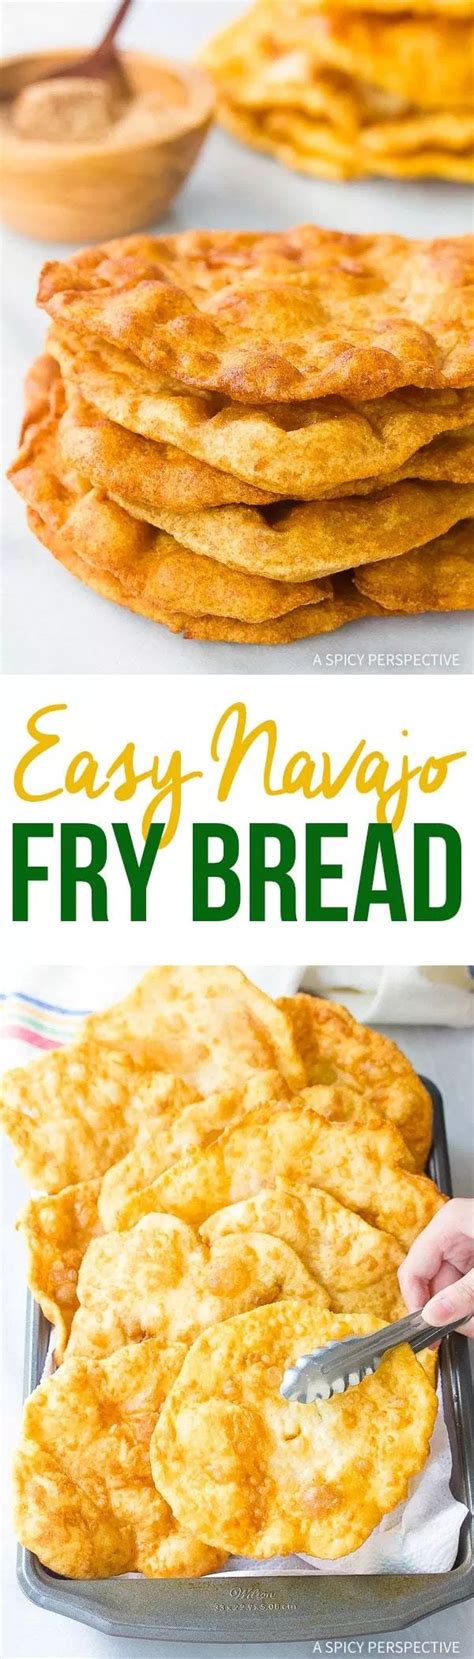 Easy Navajo Fry Bread A Spicy Perspective Bread Recipes Sweet Easy